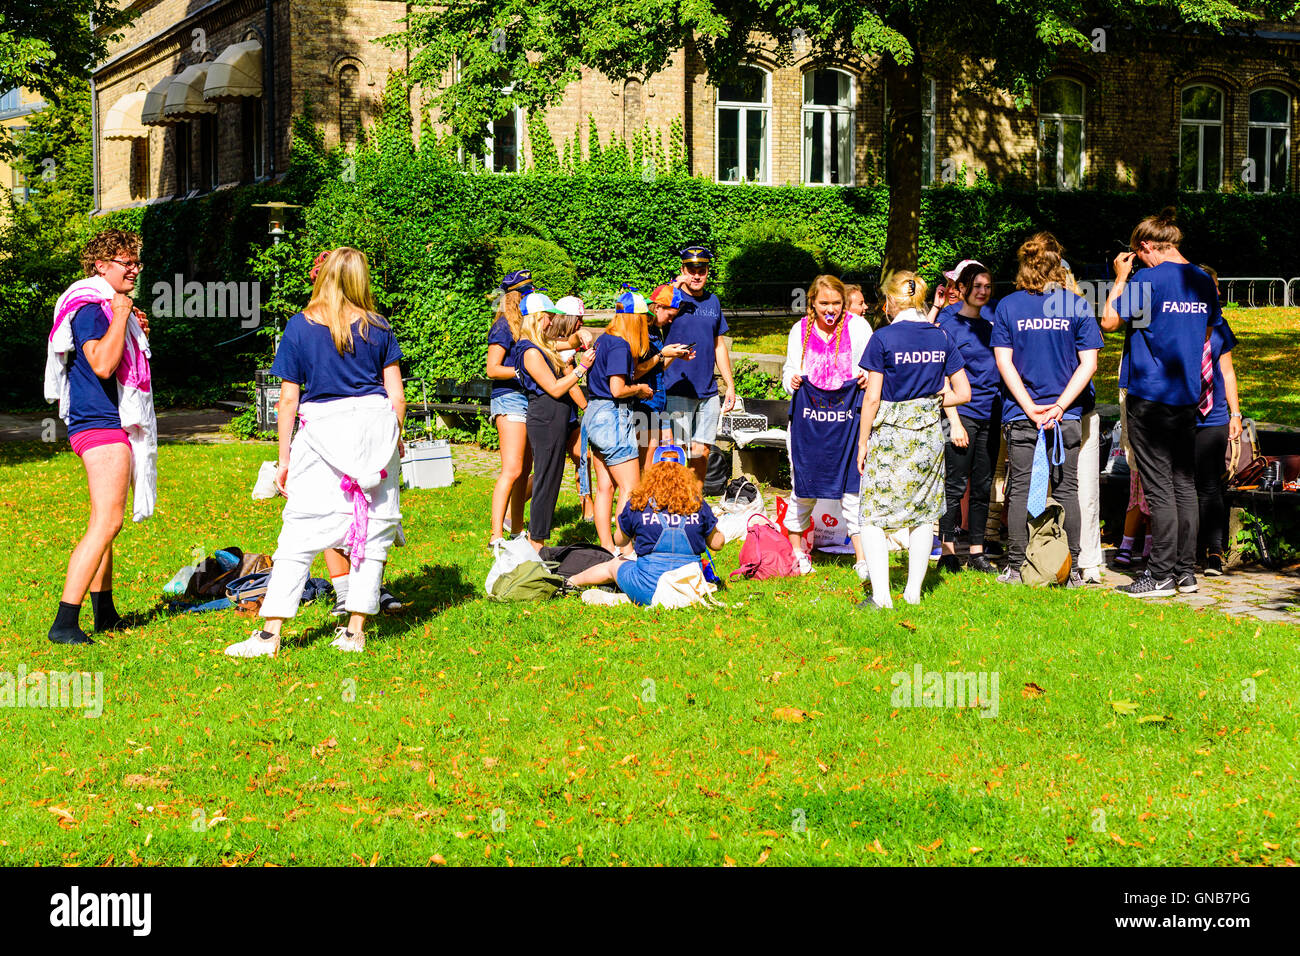 Lund, Schweden - 24. August 2016: Sponsoren (Fadder) für die Ausrichtung der Student an der Universität Lund sammeln im öffentlichen Park, pre Stockfoto